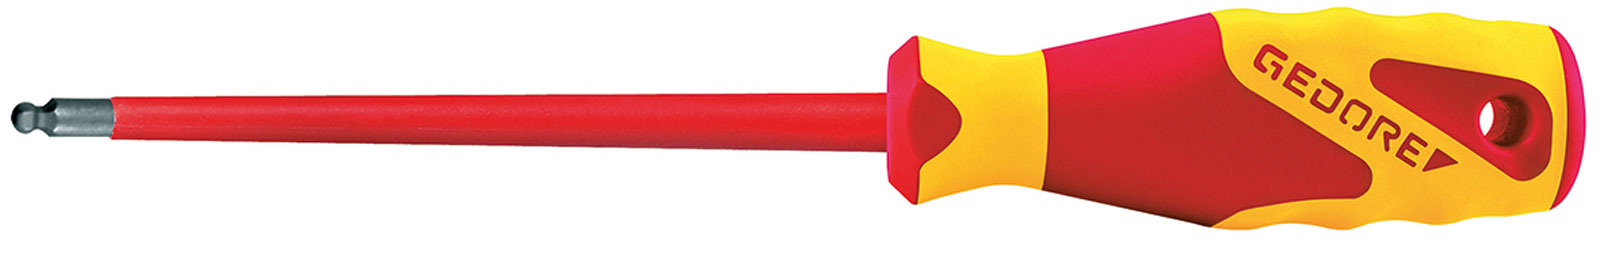 Bild für Kategorie VDE 2163 K VDE-Schraubendreher für Innensechskantschrauben, mit Kugelkopf